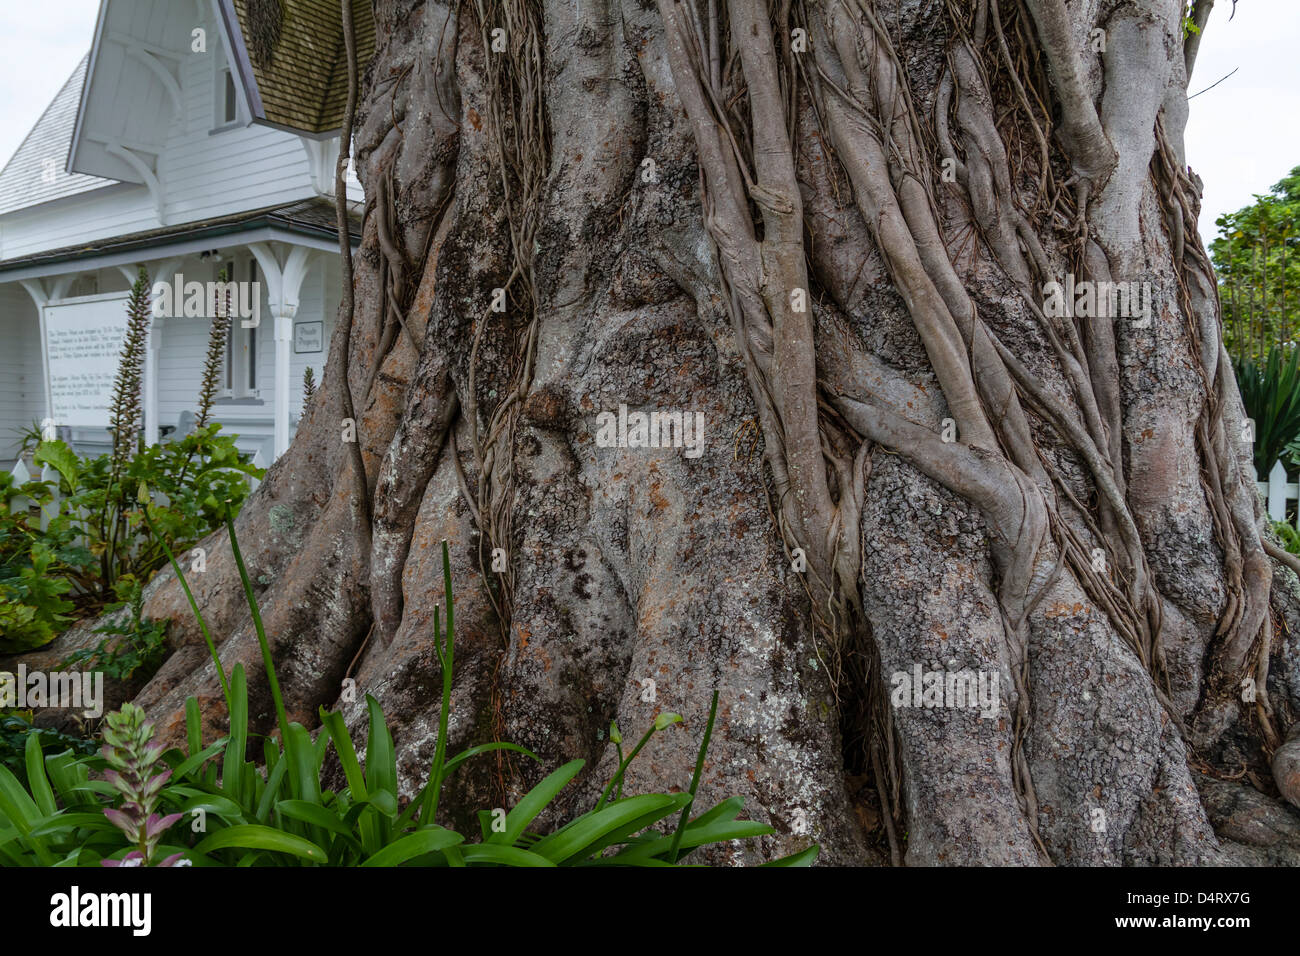 Moreton Bay historique figuier (Ficus macrophylla), dans la région de Russell, Bay of Islands, Northland, Nouvelle-Zélande, île du Nord. Banque D'Images